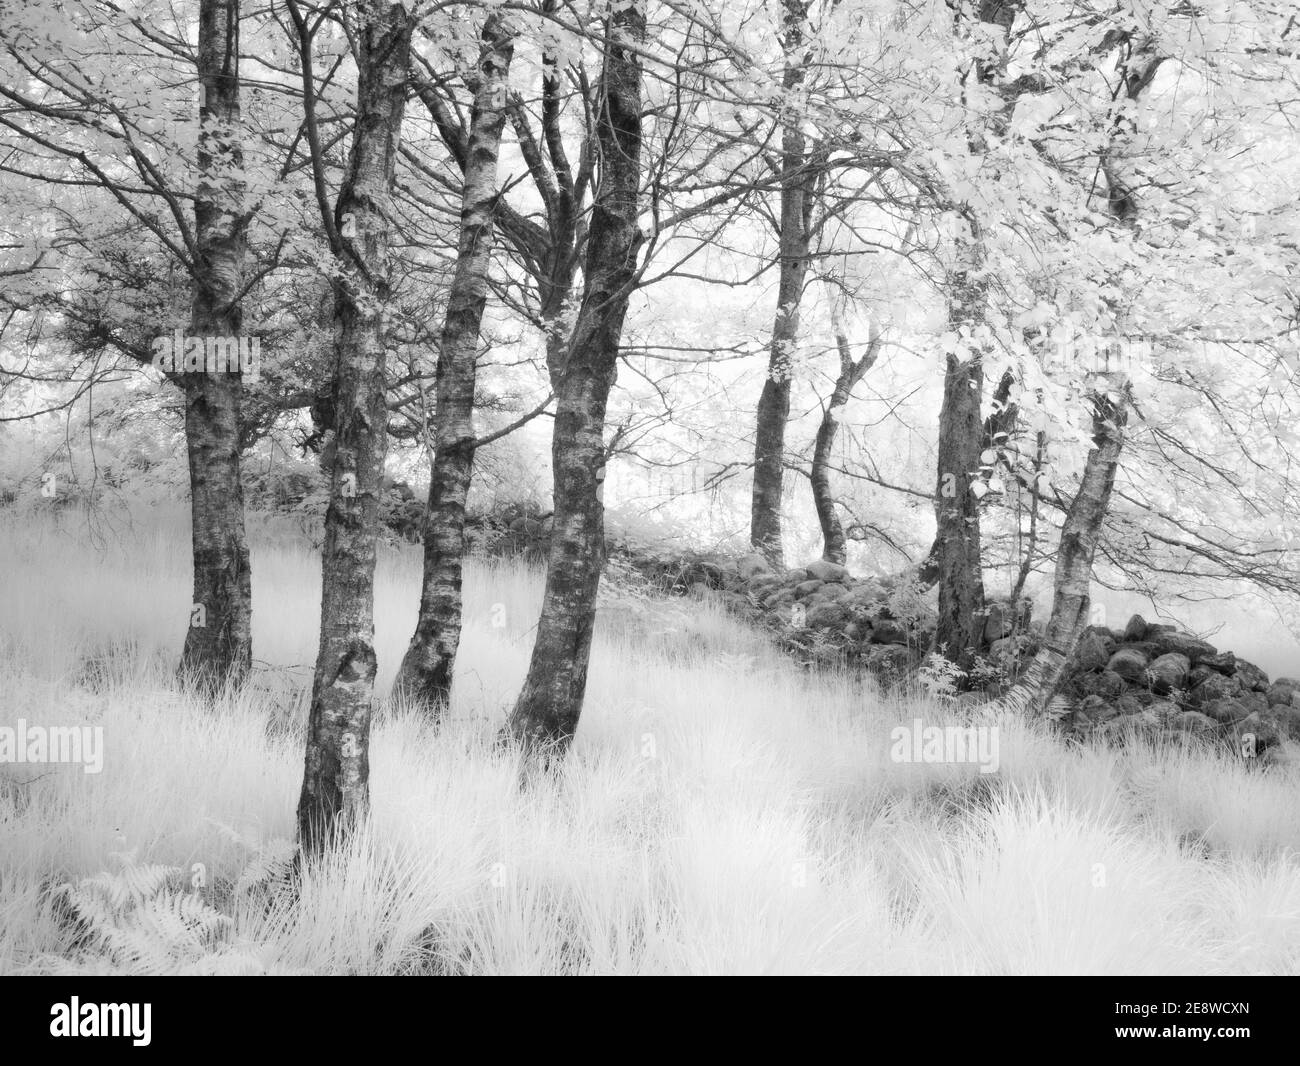 Un'immagine a infrarossi di alberi accanto a un muro di pietra in un bosco nel Parco Nazionale di Bannau Brycheiniog (Brecon Beacons). Foto Stock